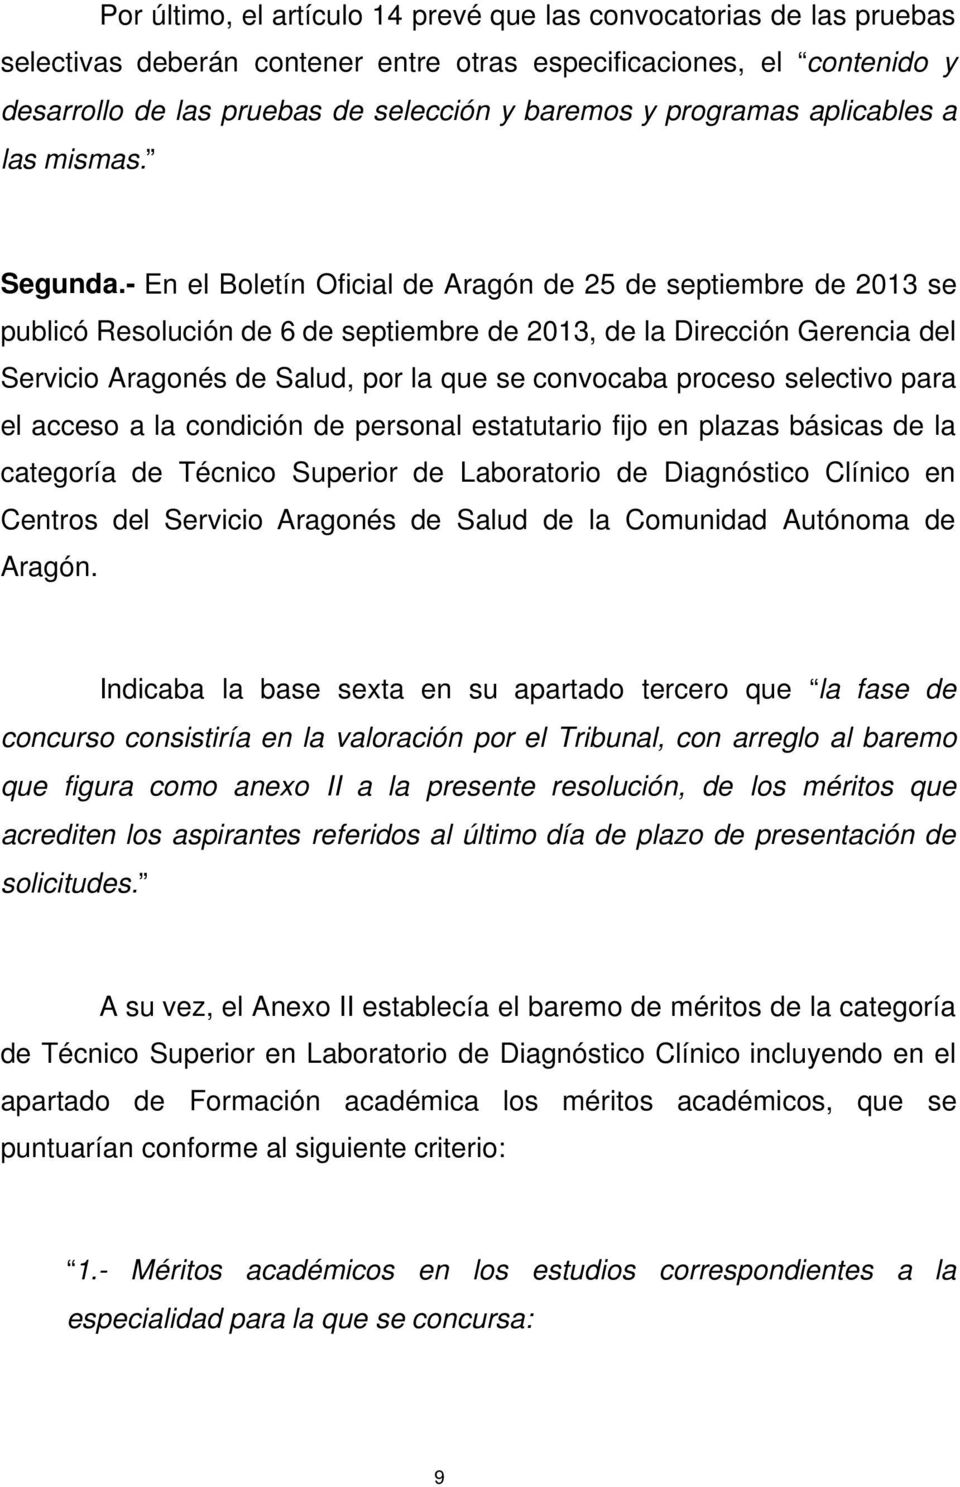 - En el Boletín Oficial de Aragón de 25 de septiembre de 2013 se publicó Resolución de 6 de septiembre de 2013, de la Dirección Gerencia del Servicio Aragonés de Salud, por la que se convocaba